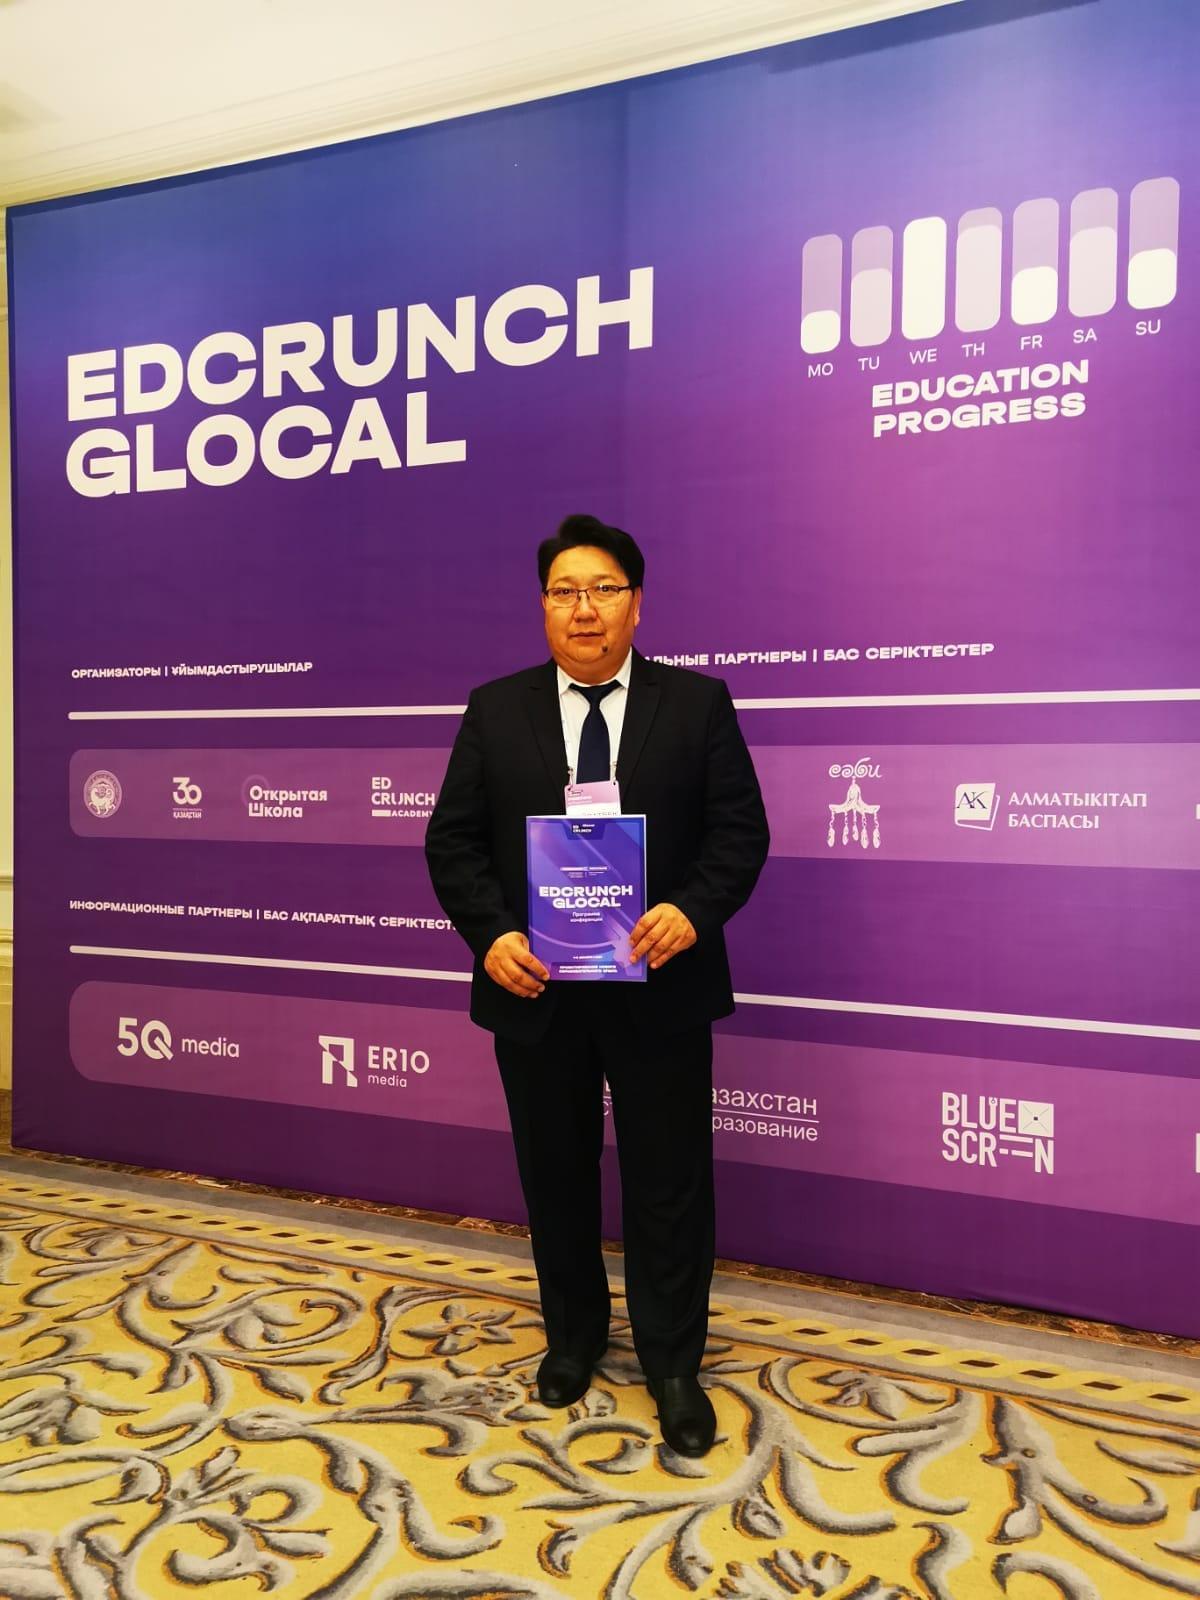 Алматыда жаңа технологиялар әлеміне байланысты "Edcrunch Glogal" атты халықаралық конференциясы өтті.